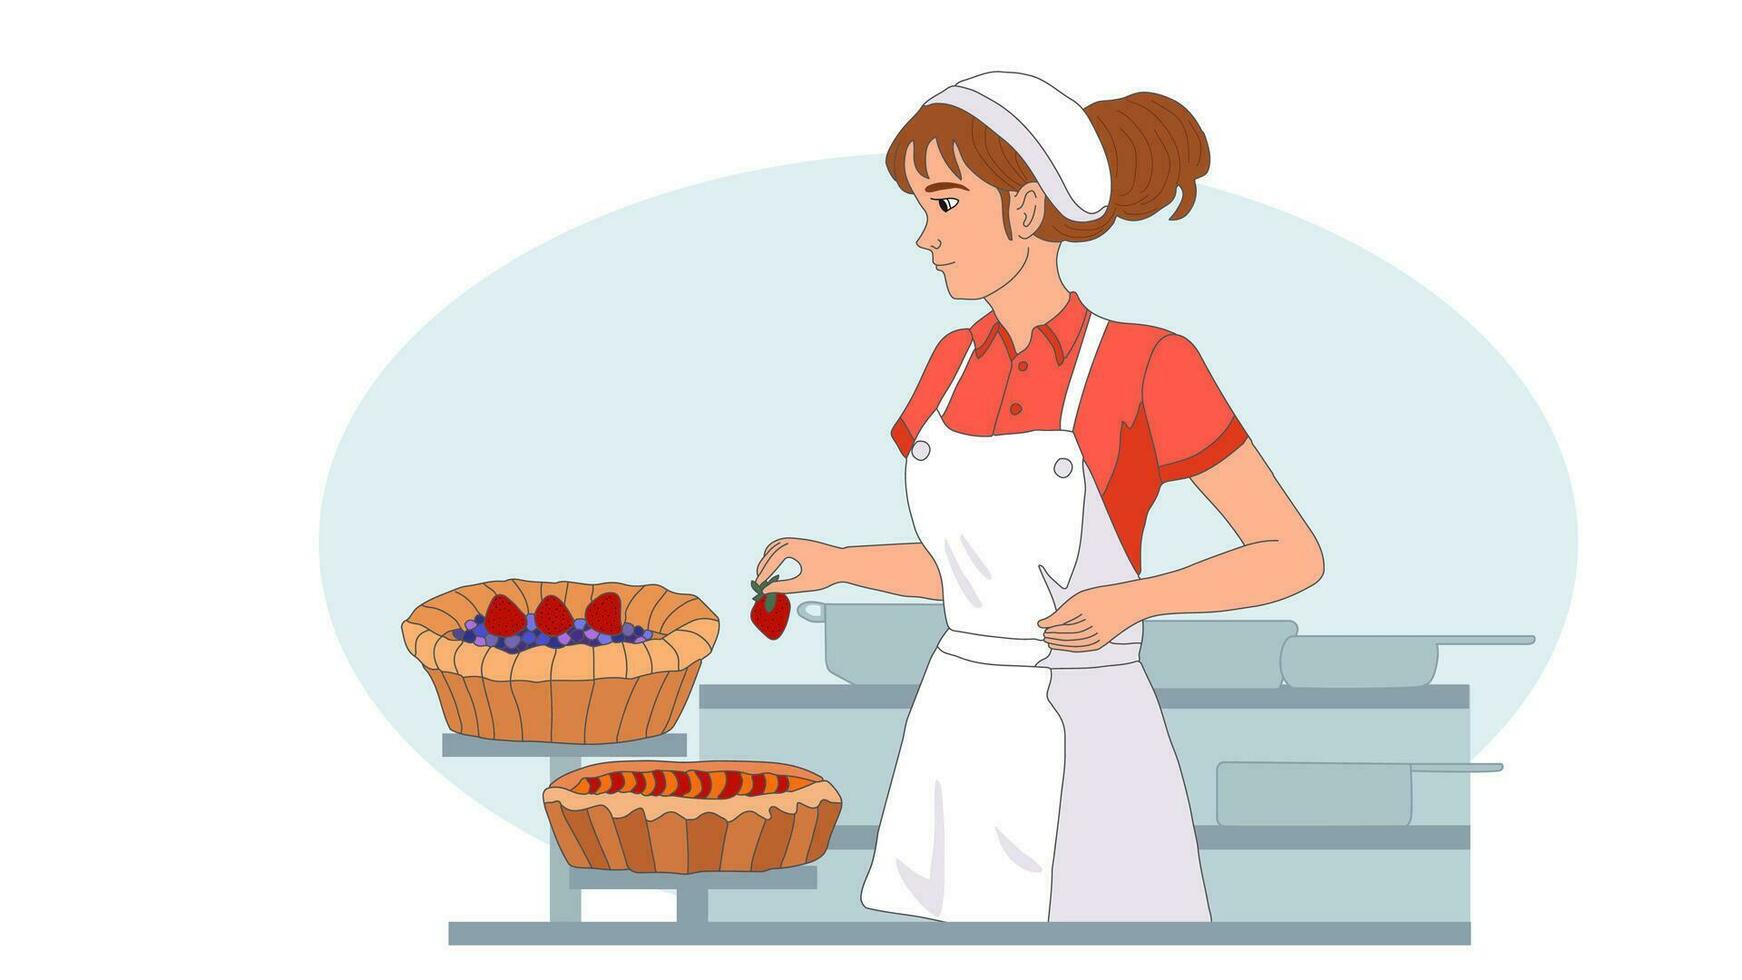 mujer decora horneado hecho en casa Fruta pasteles con fresas niña confitero cocinar para Cocinando delicioso sano postre. vector aislado. cumpleaños pastel, confitería, panadería, comida blogueando, Pastelería comercio, en línea cocinando, pasatiempo.